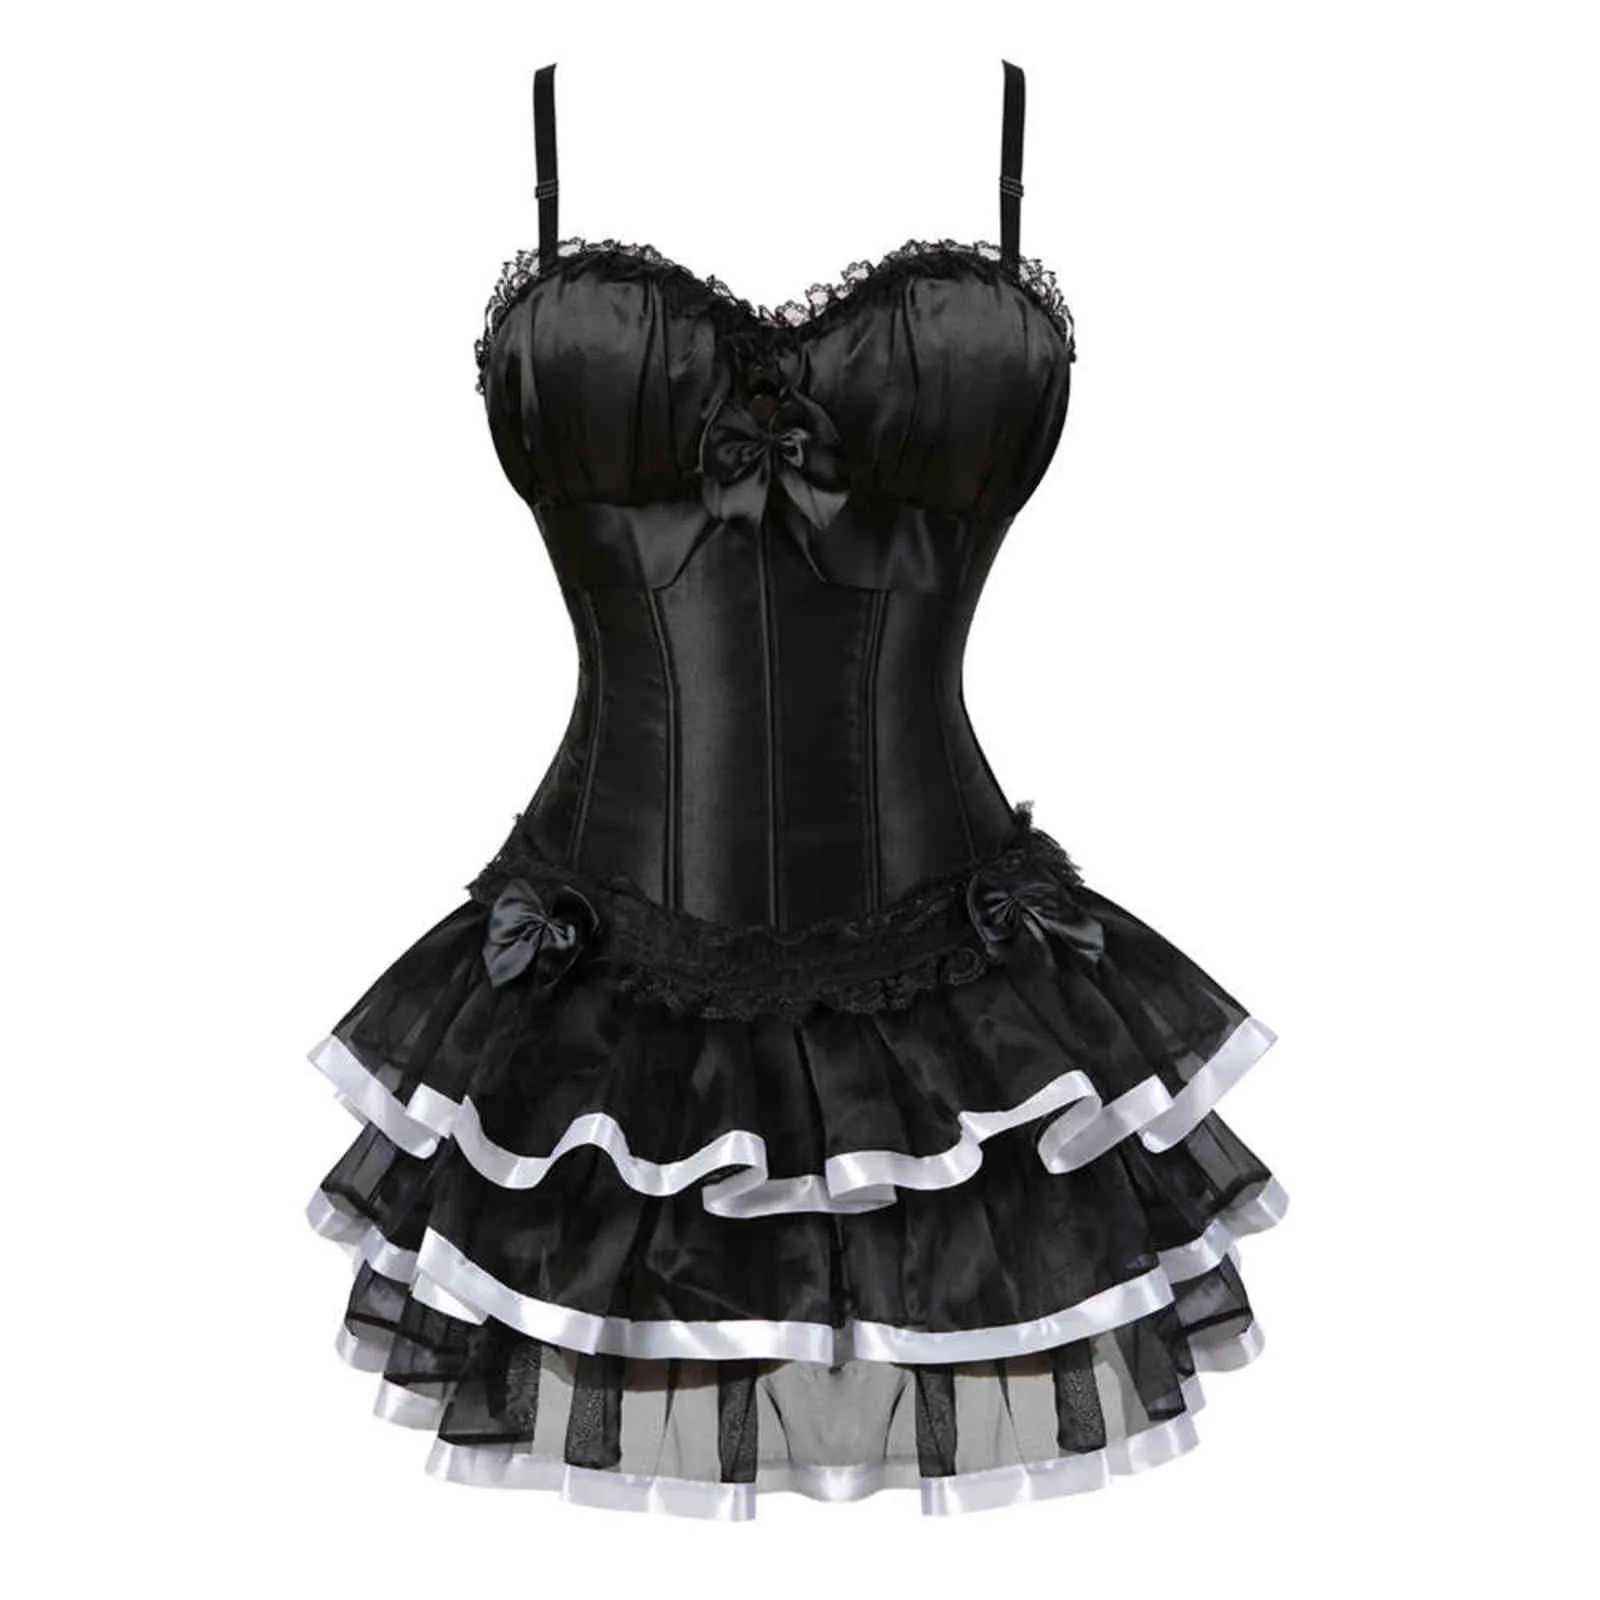 Nxy sexy set zwart victoriaanse korset jurk burlesque schouder band lingerie bustiers met tutu rok set lace up body shaper voor vrouwen 1130